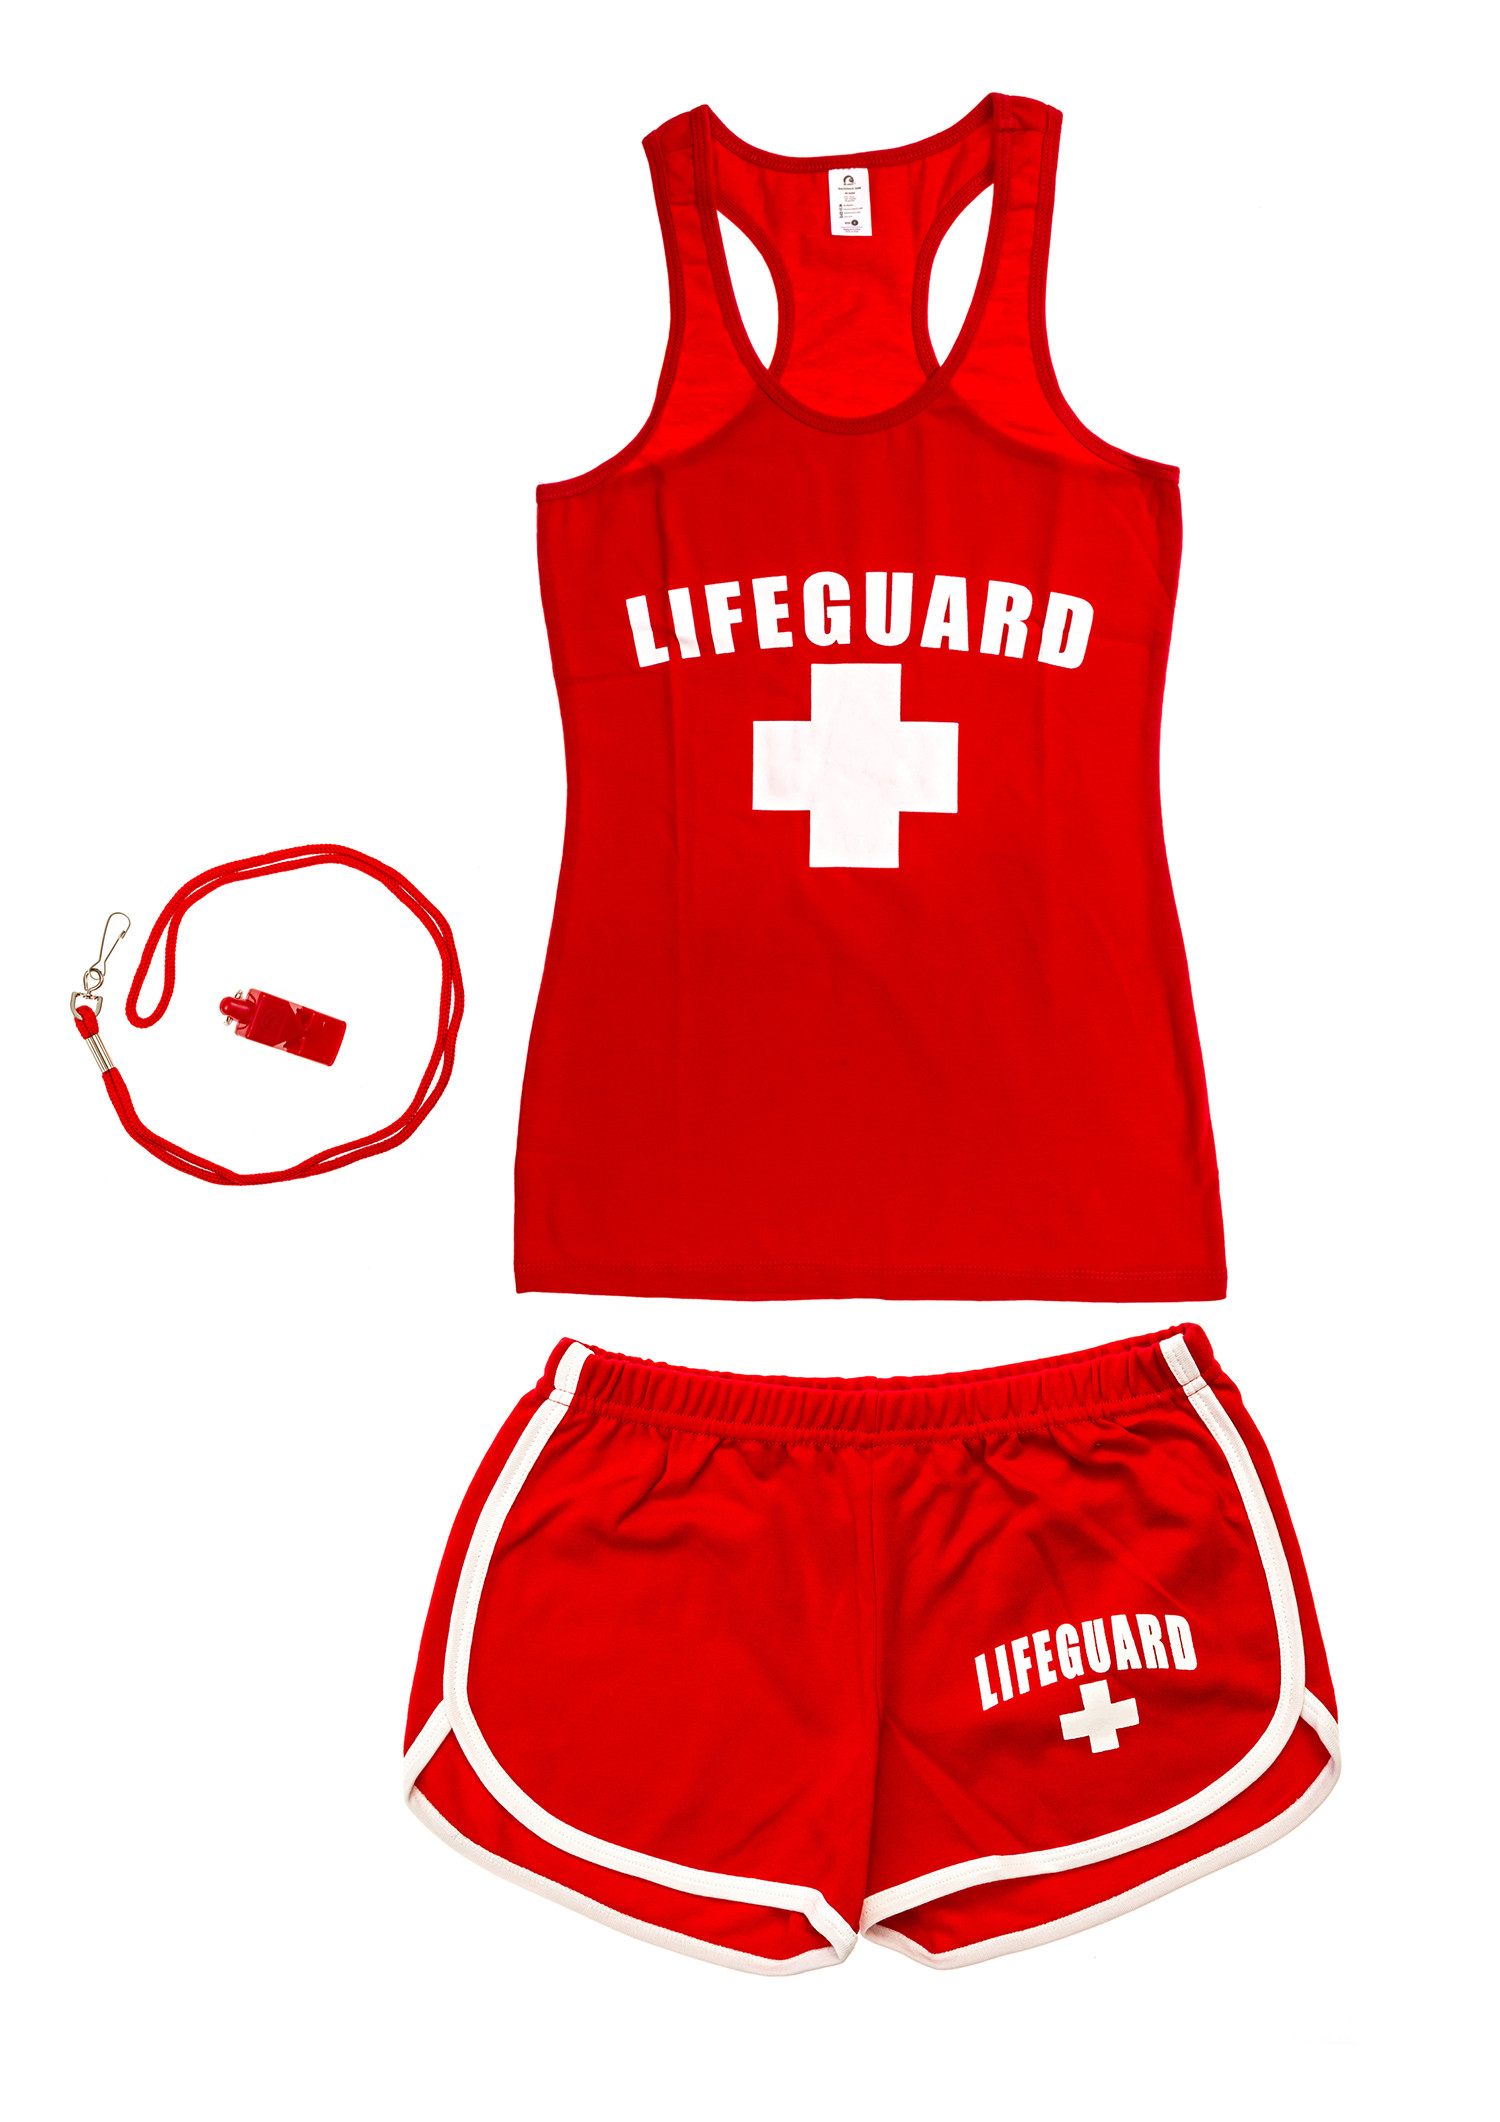 DIY Lifeguard Costume
 diy lifeguard costume